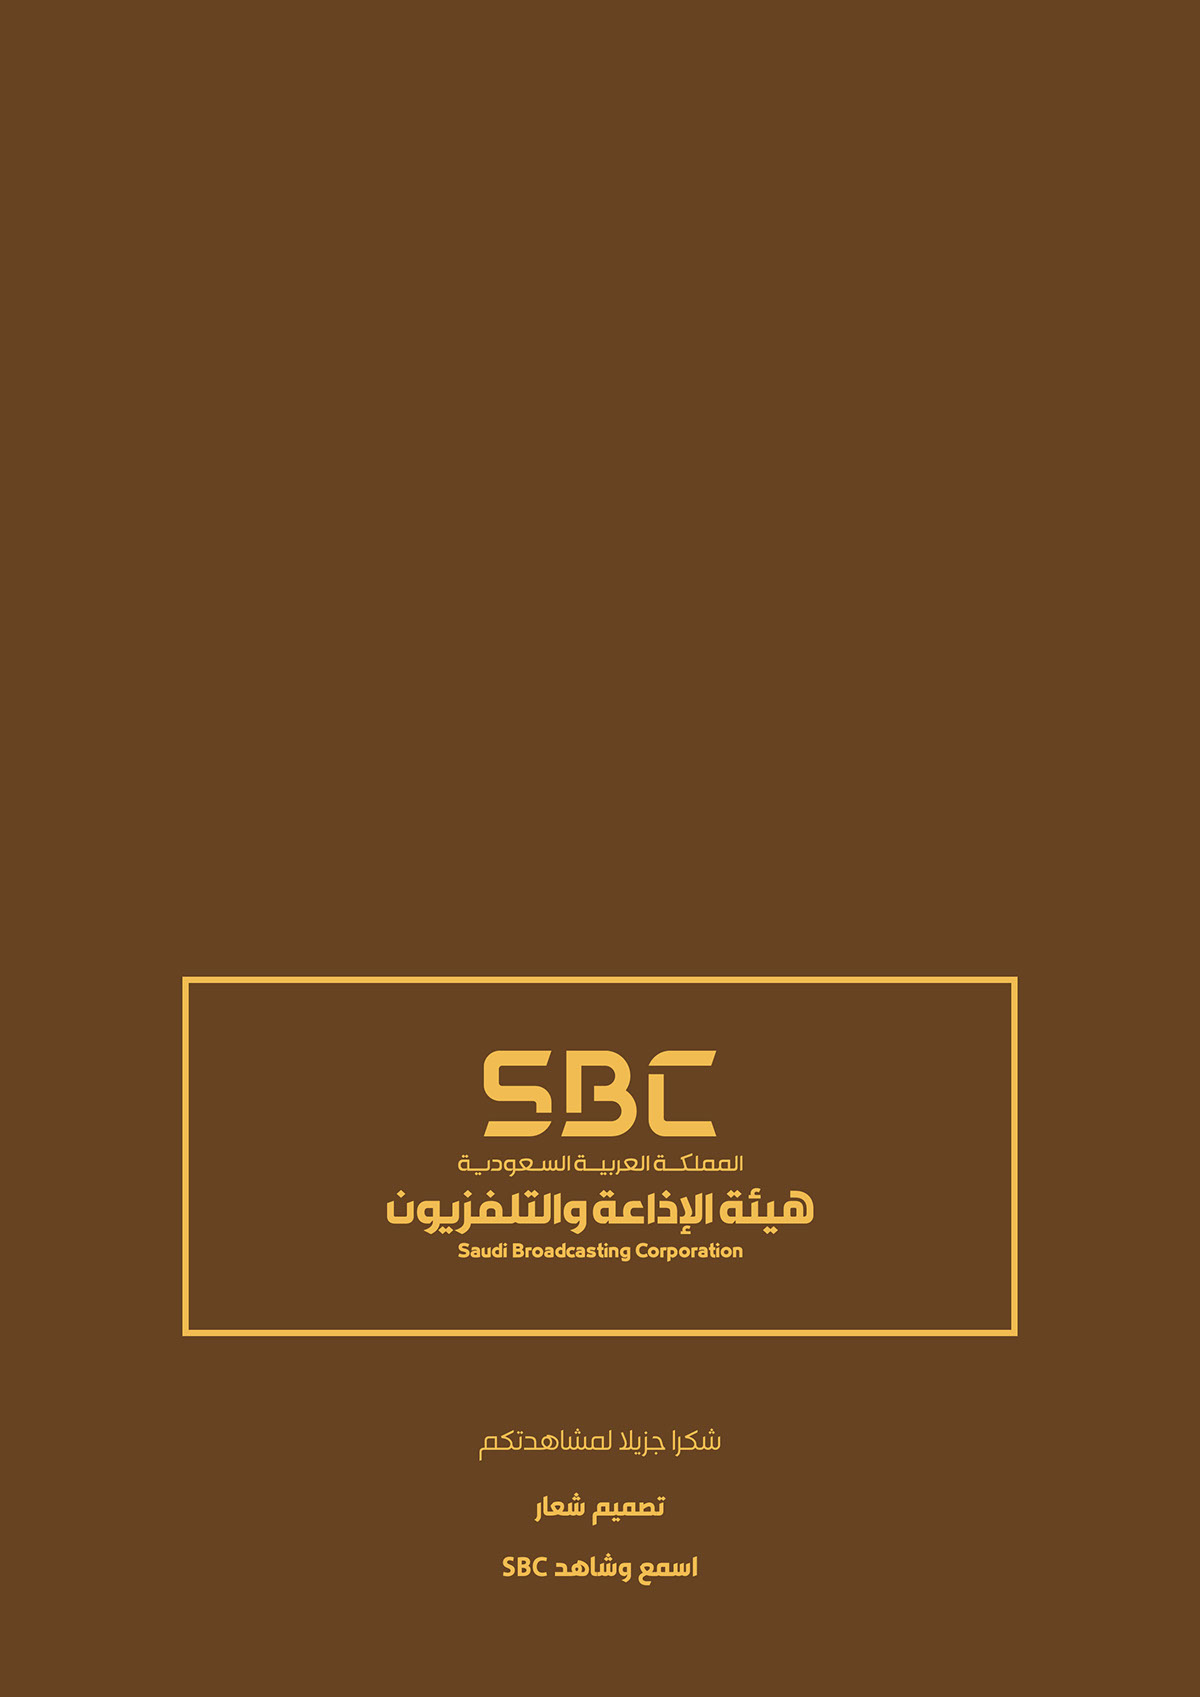 sbc شعار logo SBC logo اسمع شاهد